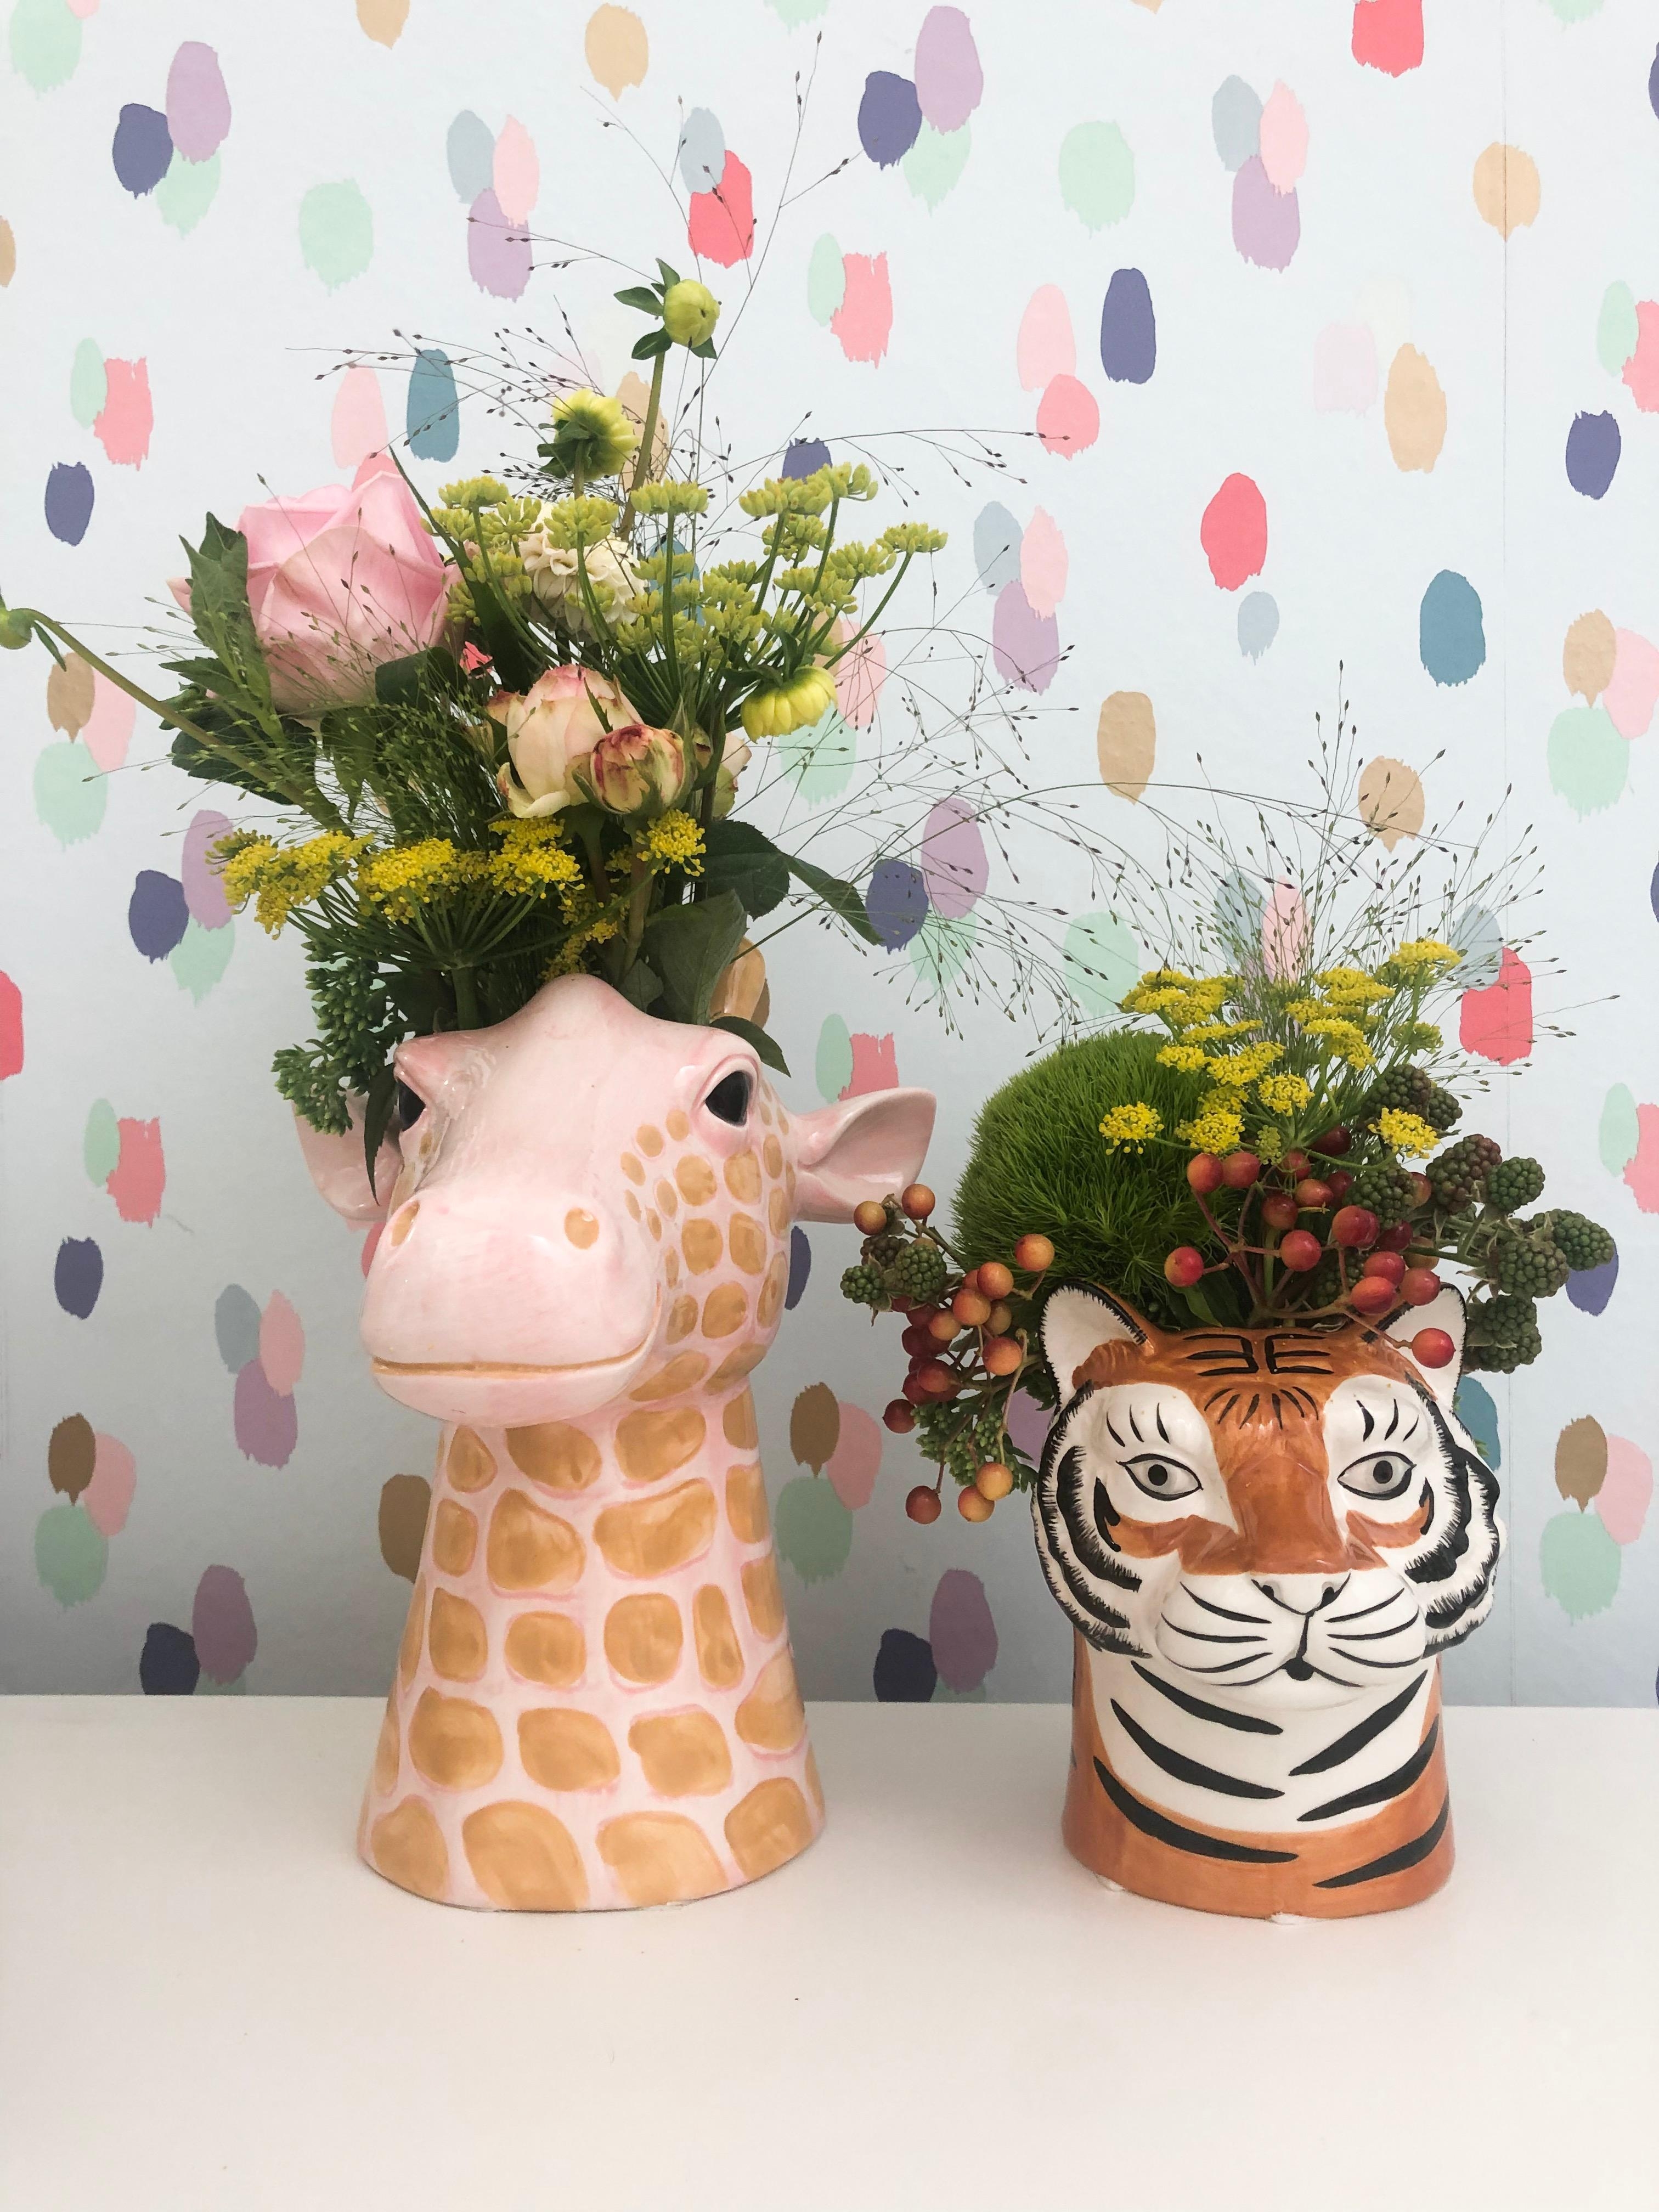 Lieblings Vasen 
#vasen #tiere #bunt #colorful #giraffe trifft #tieger #freshflowerfriday